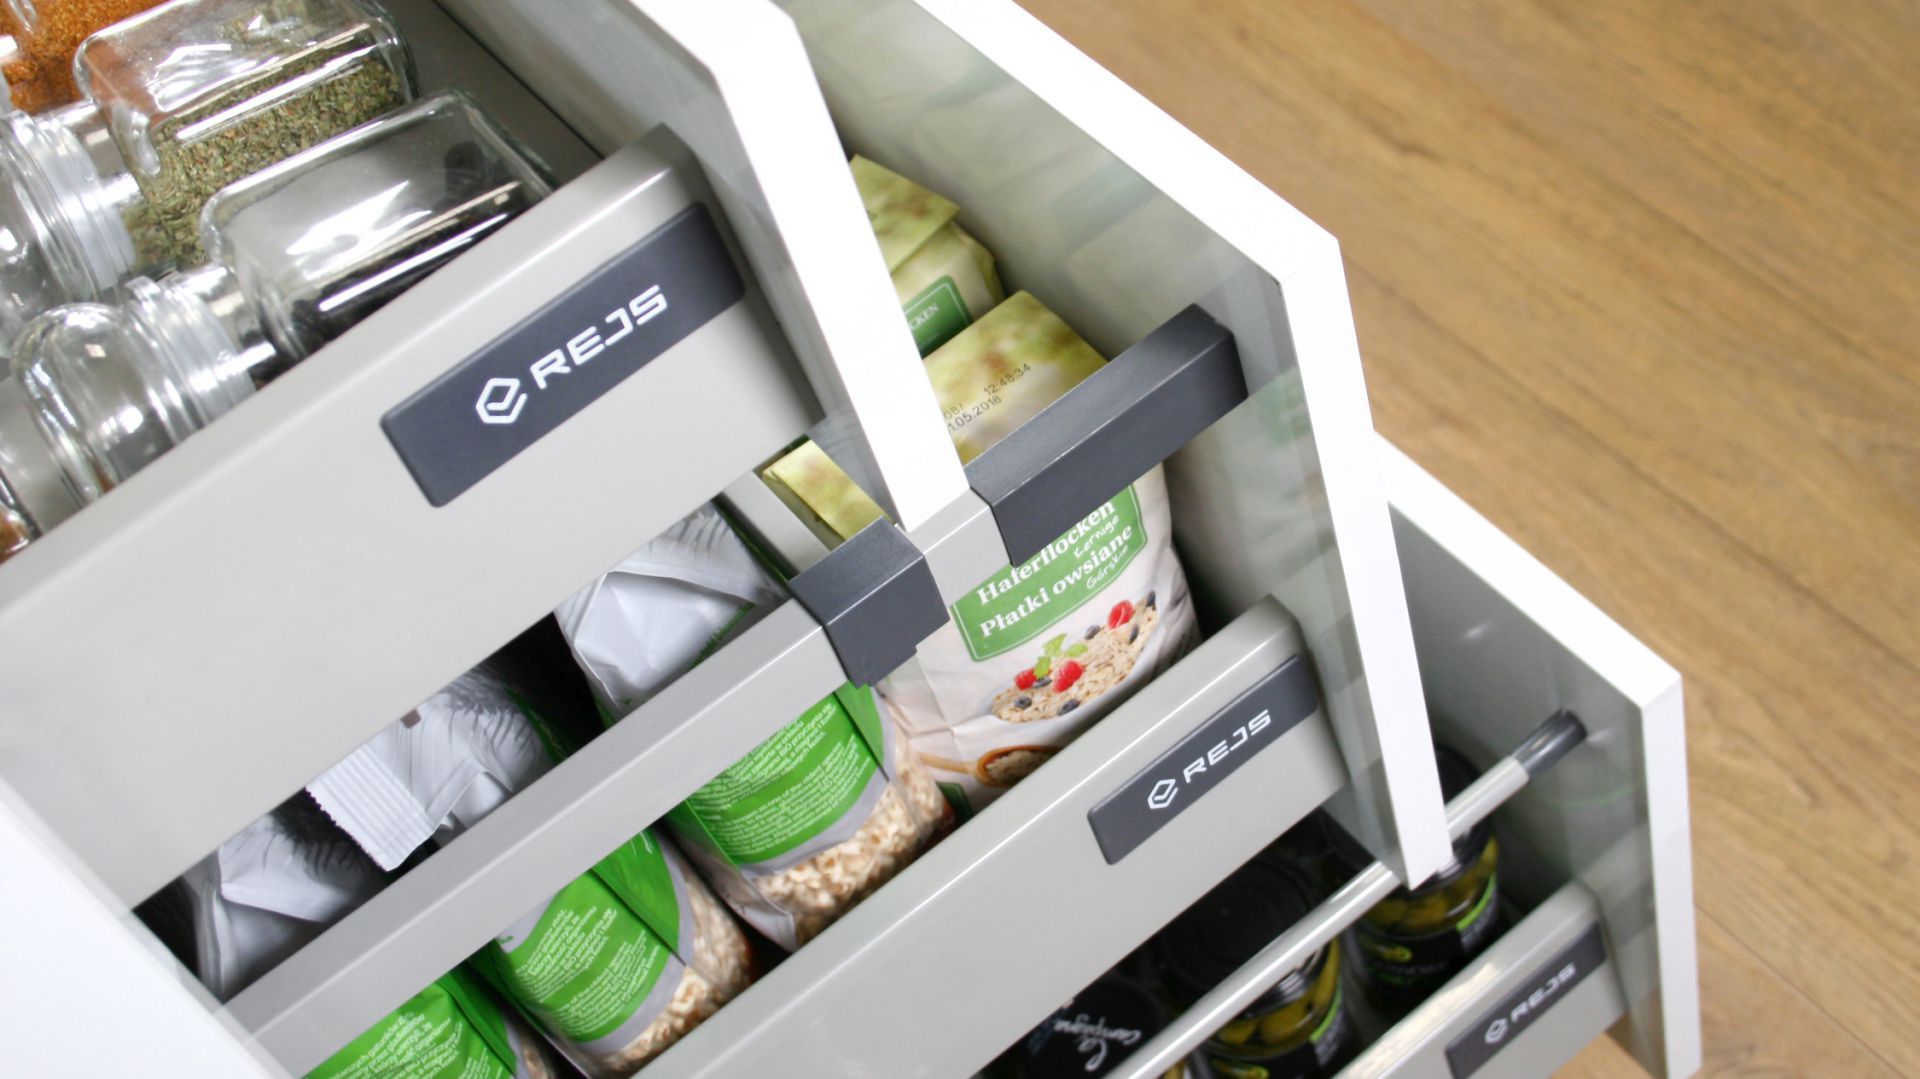 Comfort Box Rejs - szuflady stworzone z myślą o kuchni. Fot. Rejs